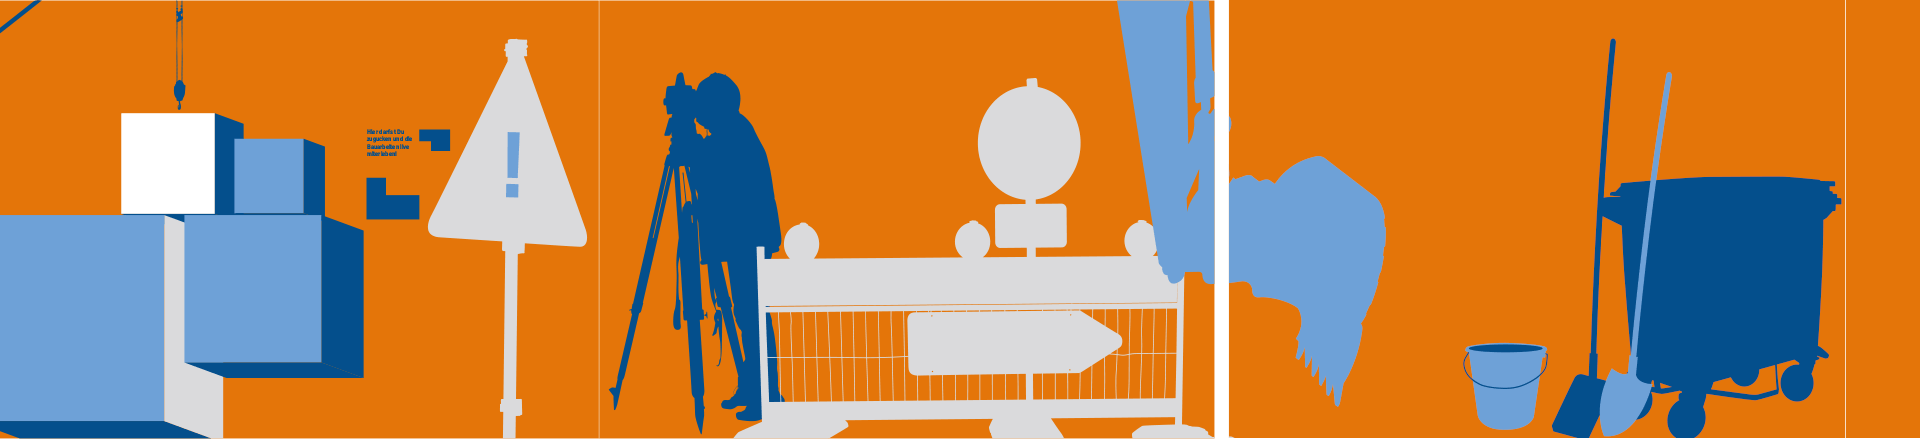 ThyssenKrupp Bauzaun Illustration einer Baustelle auf orangenem Hintergrund